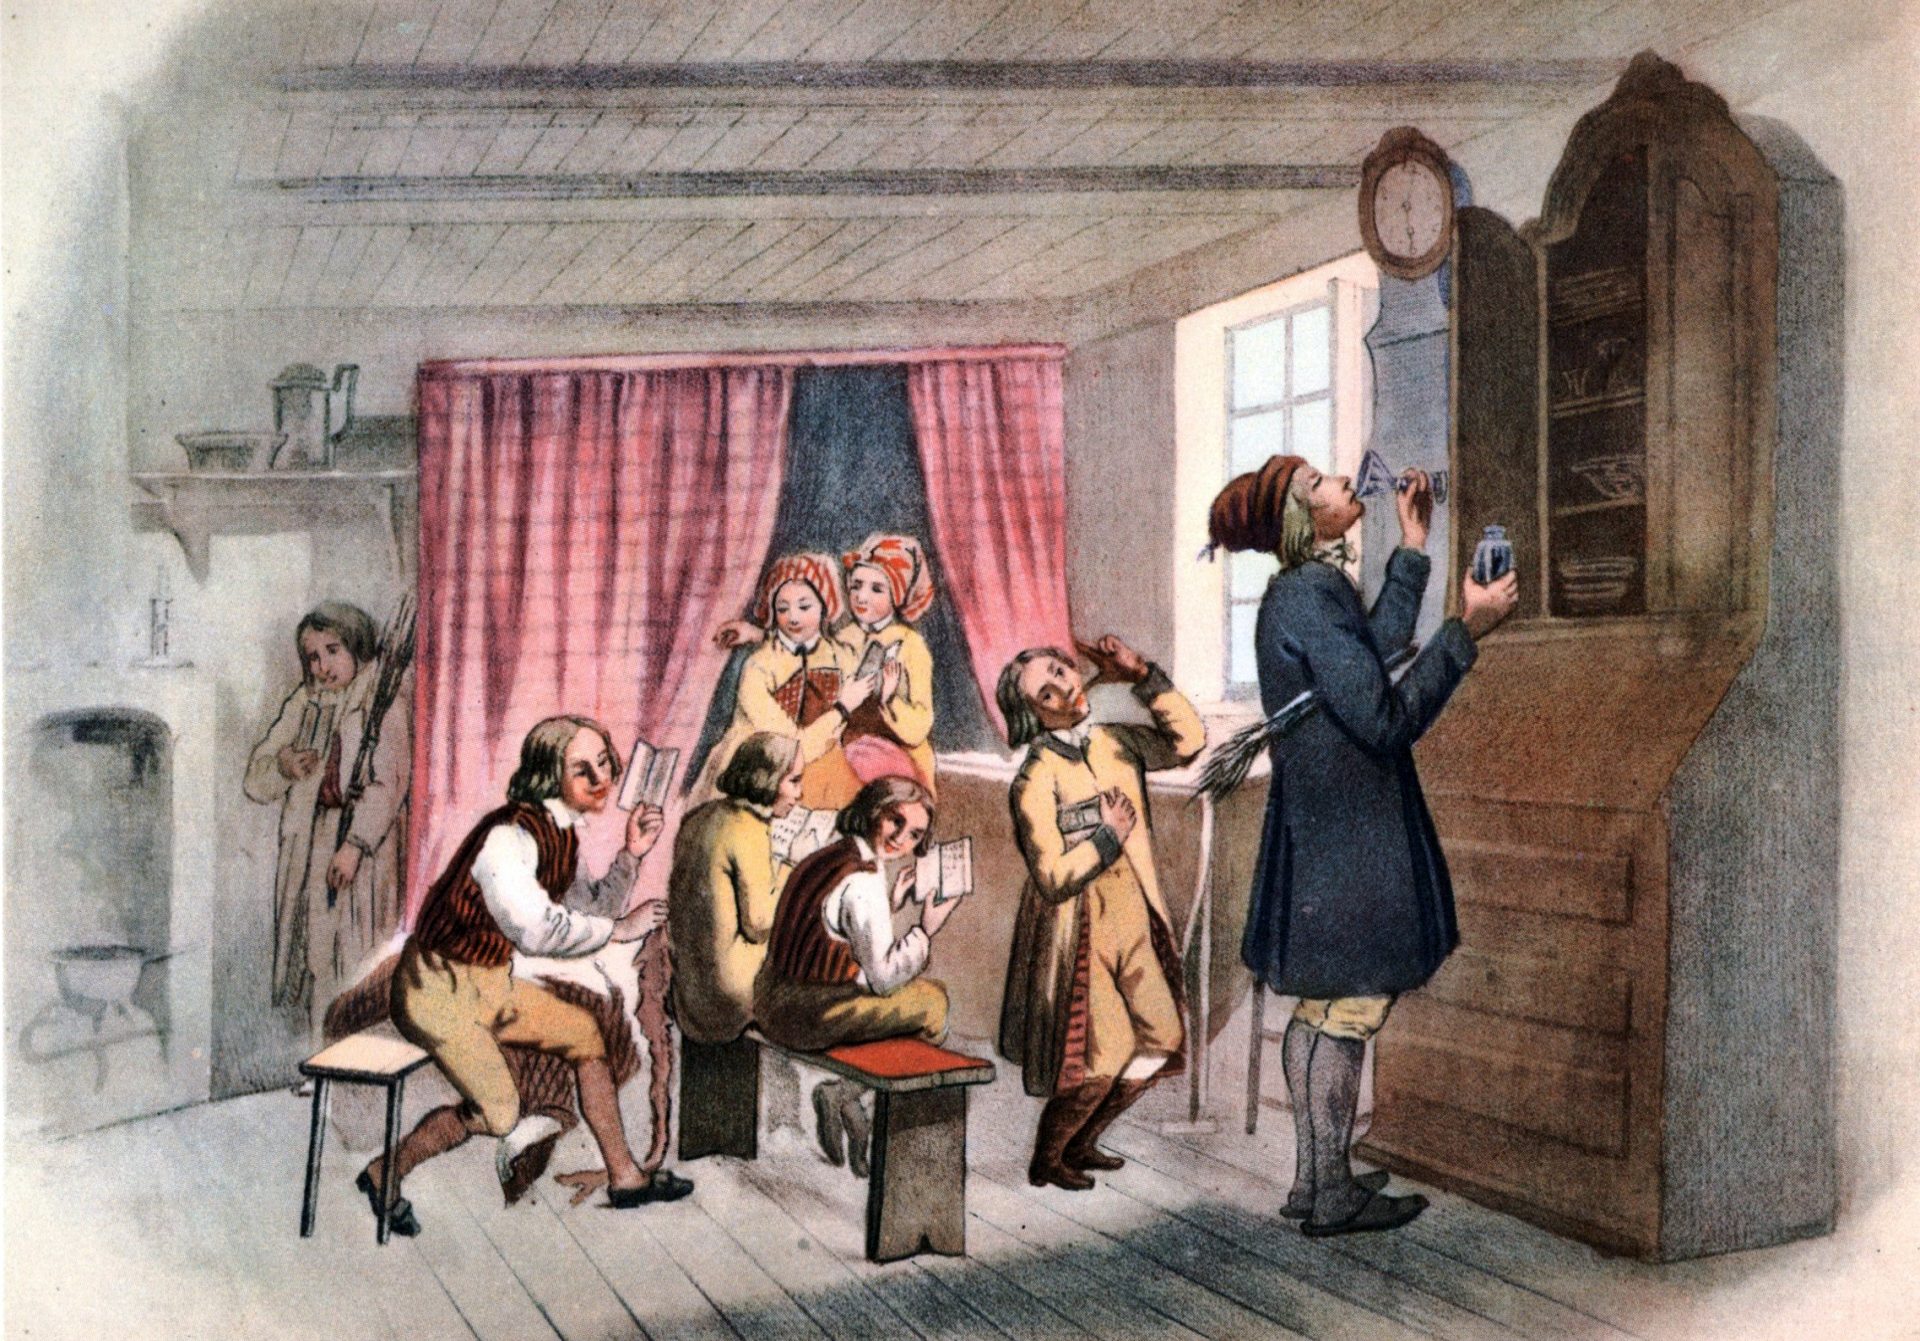 Illustration av skolmiljö på 1800-talet. Barn vid skolbänkar och stående i rummet och en vuxen som står vid ett skåp och dricker.